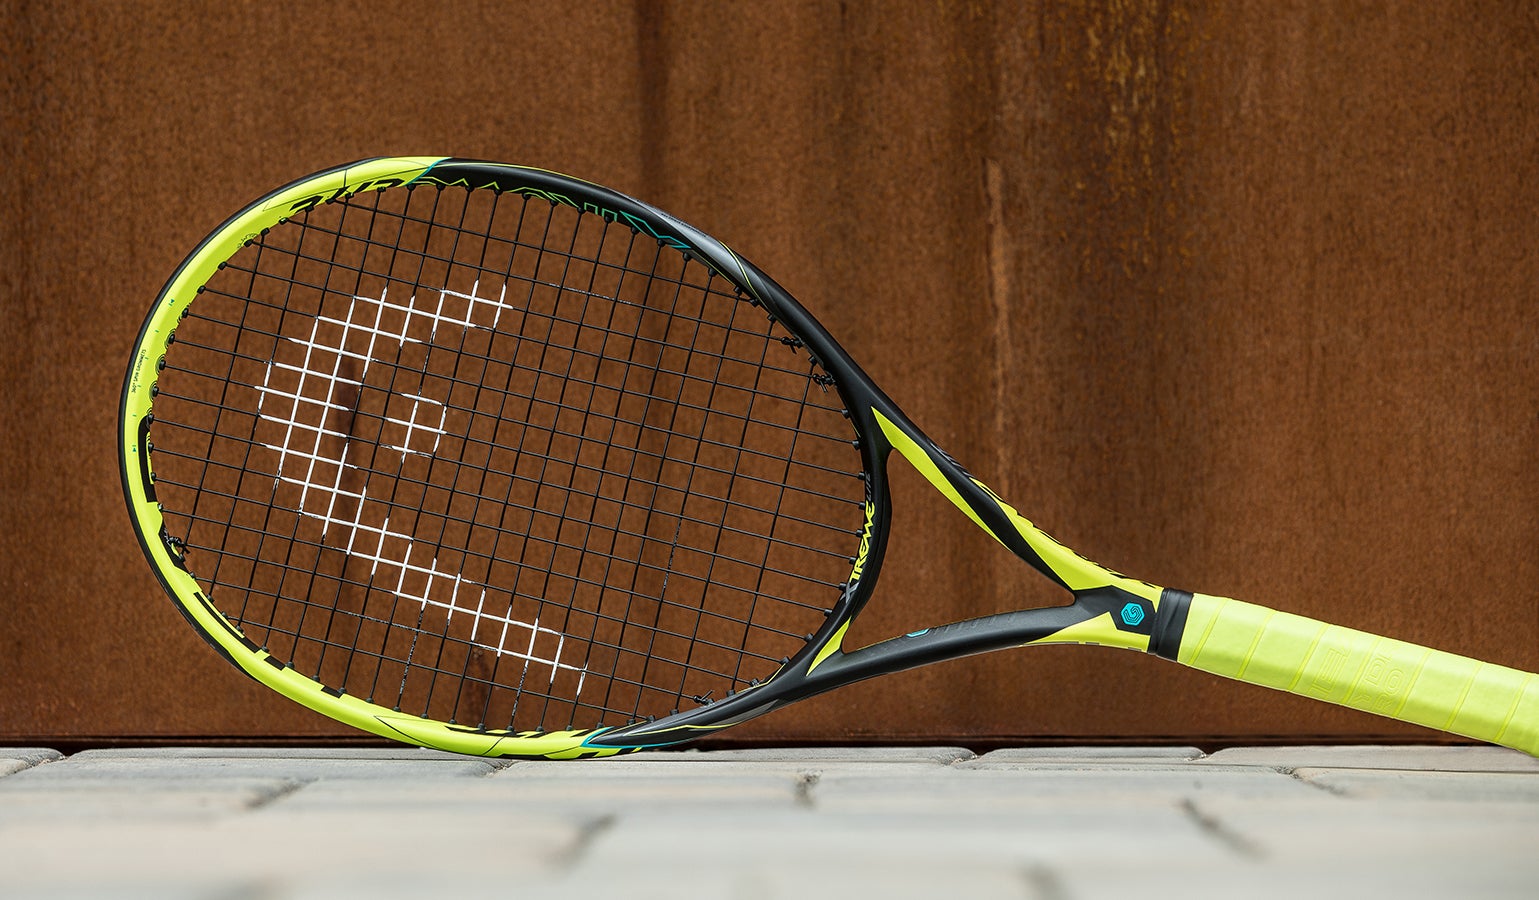 Details about   HEAD Graphene XT Extreme Lite Tennis Racquet Authorized Dealer 